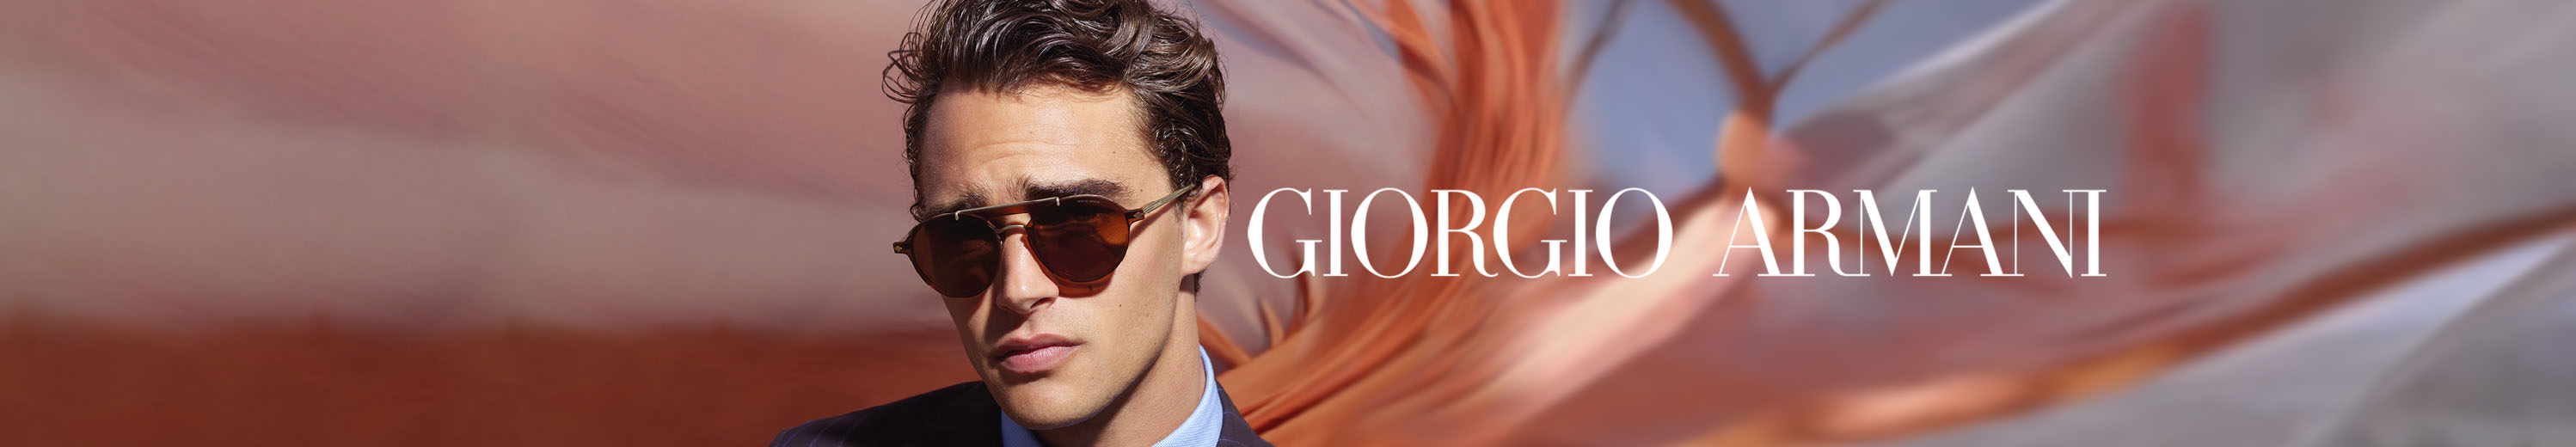 Giorgio Armani Sunglasses for Men